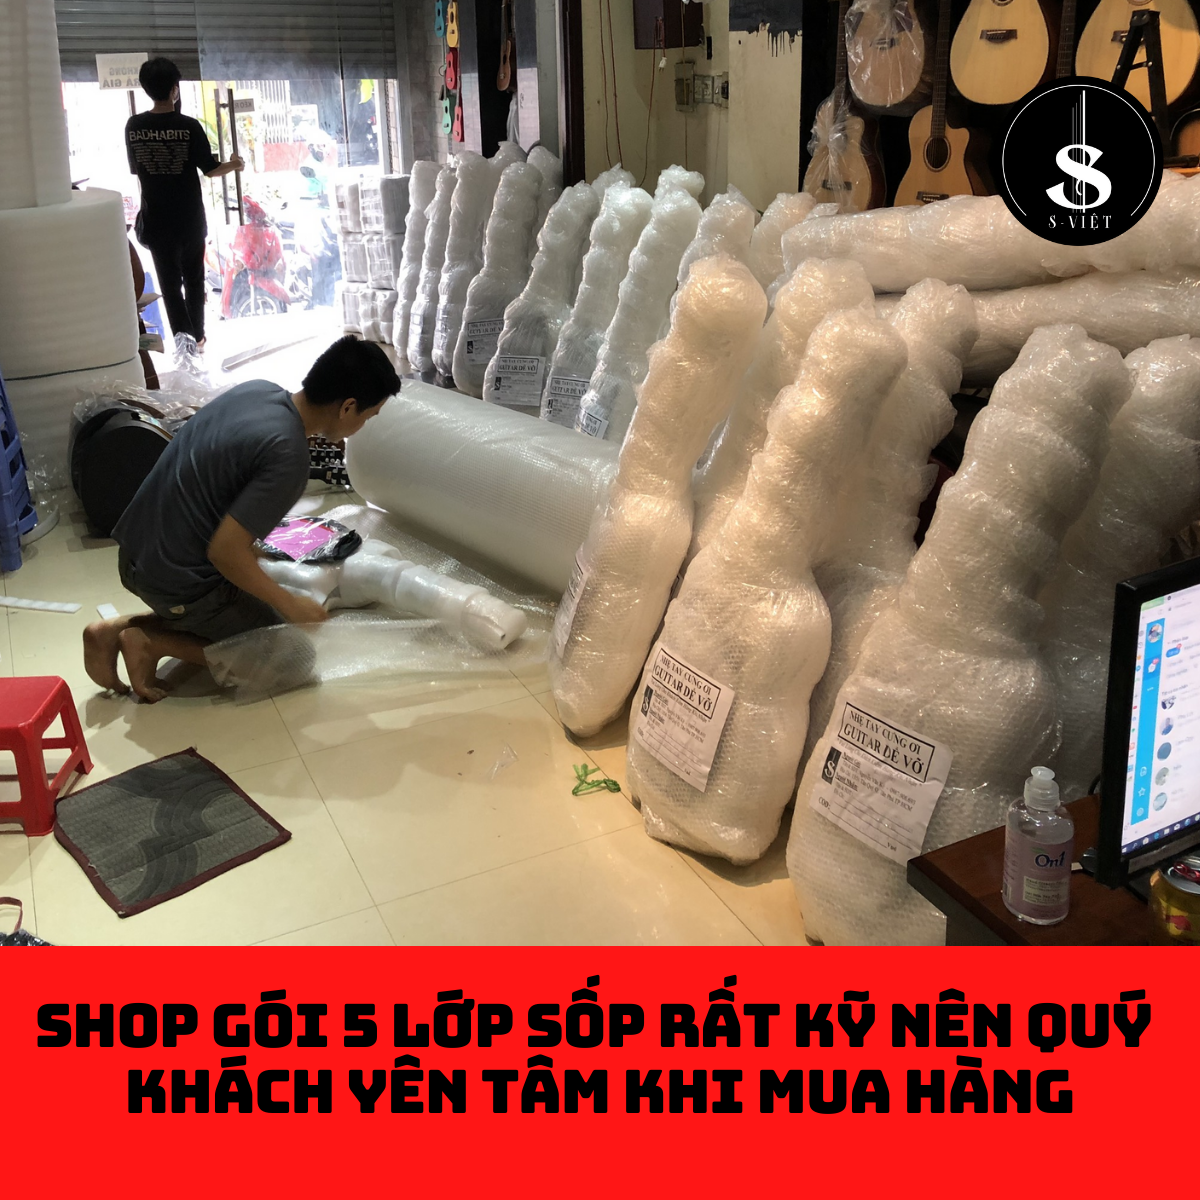 Trống cajon giá rẻ gỗ thịt, snare dây tem cao cấp chính hãng S Việt mã SR03